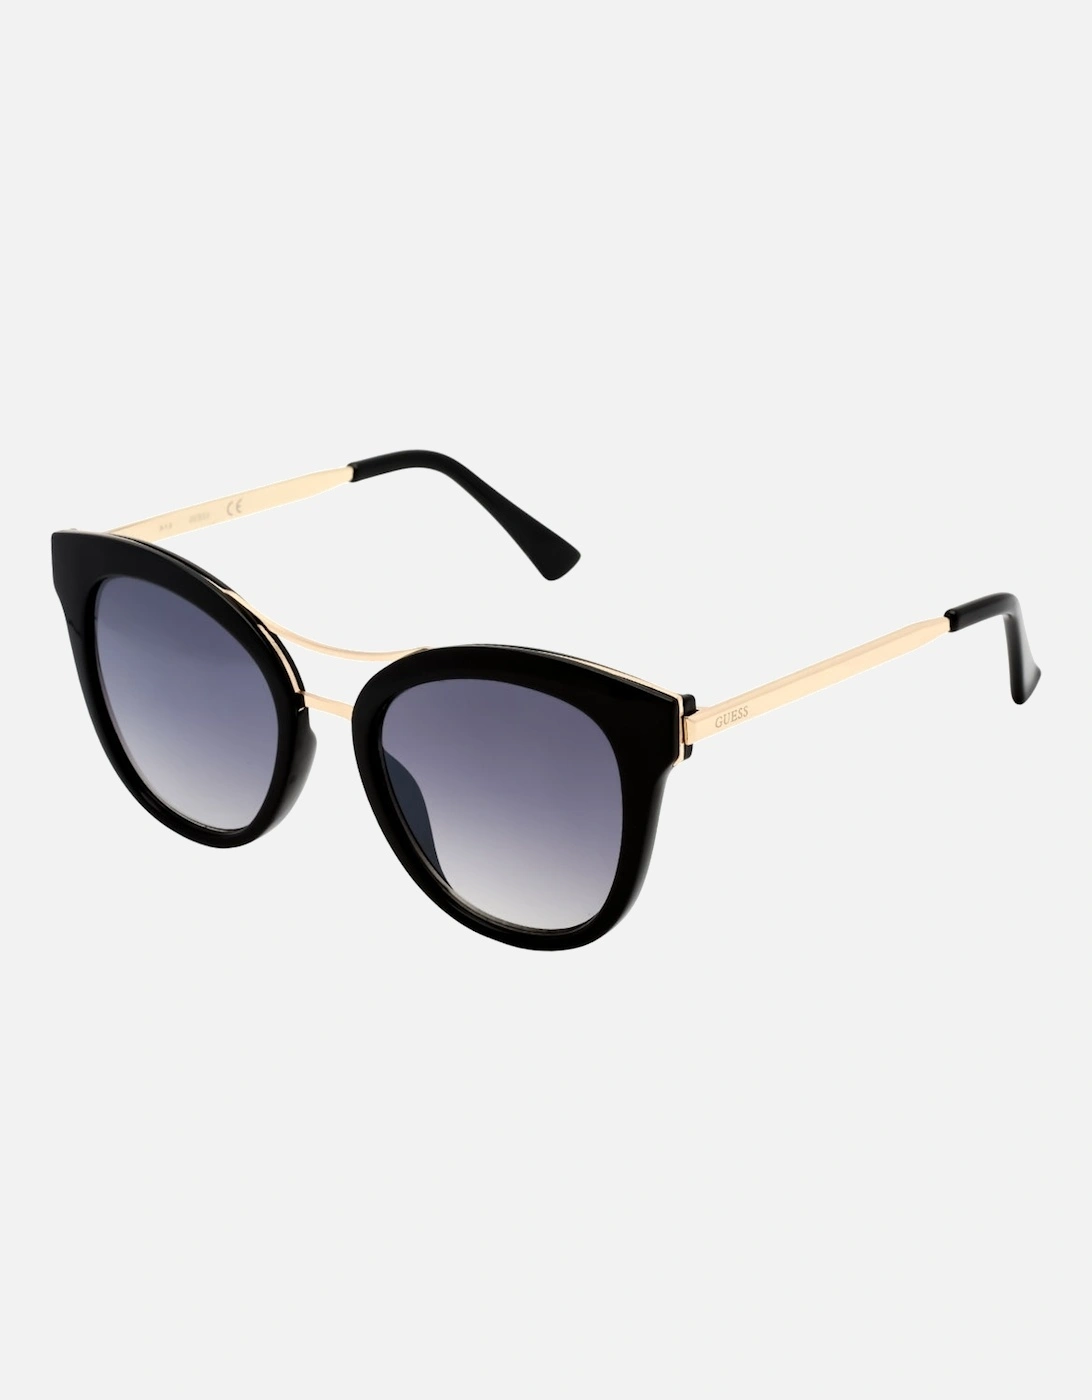 GF0304 01C Black Sunglasses